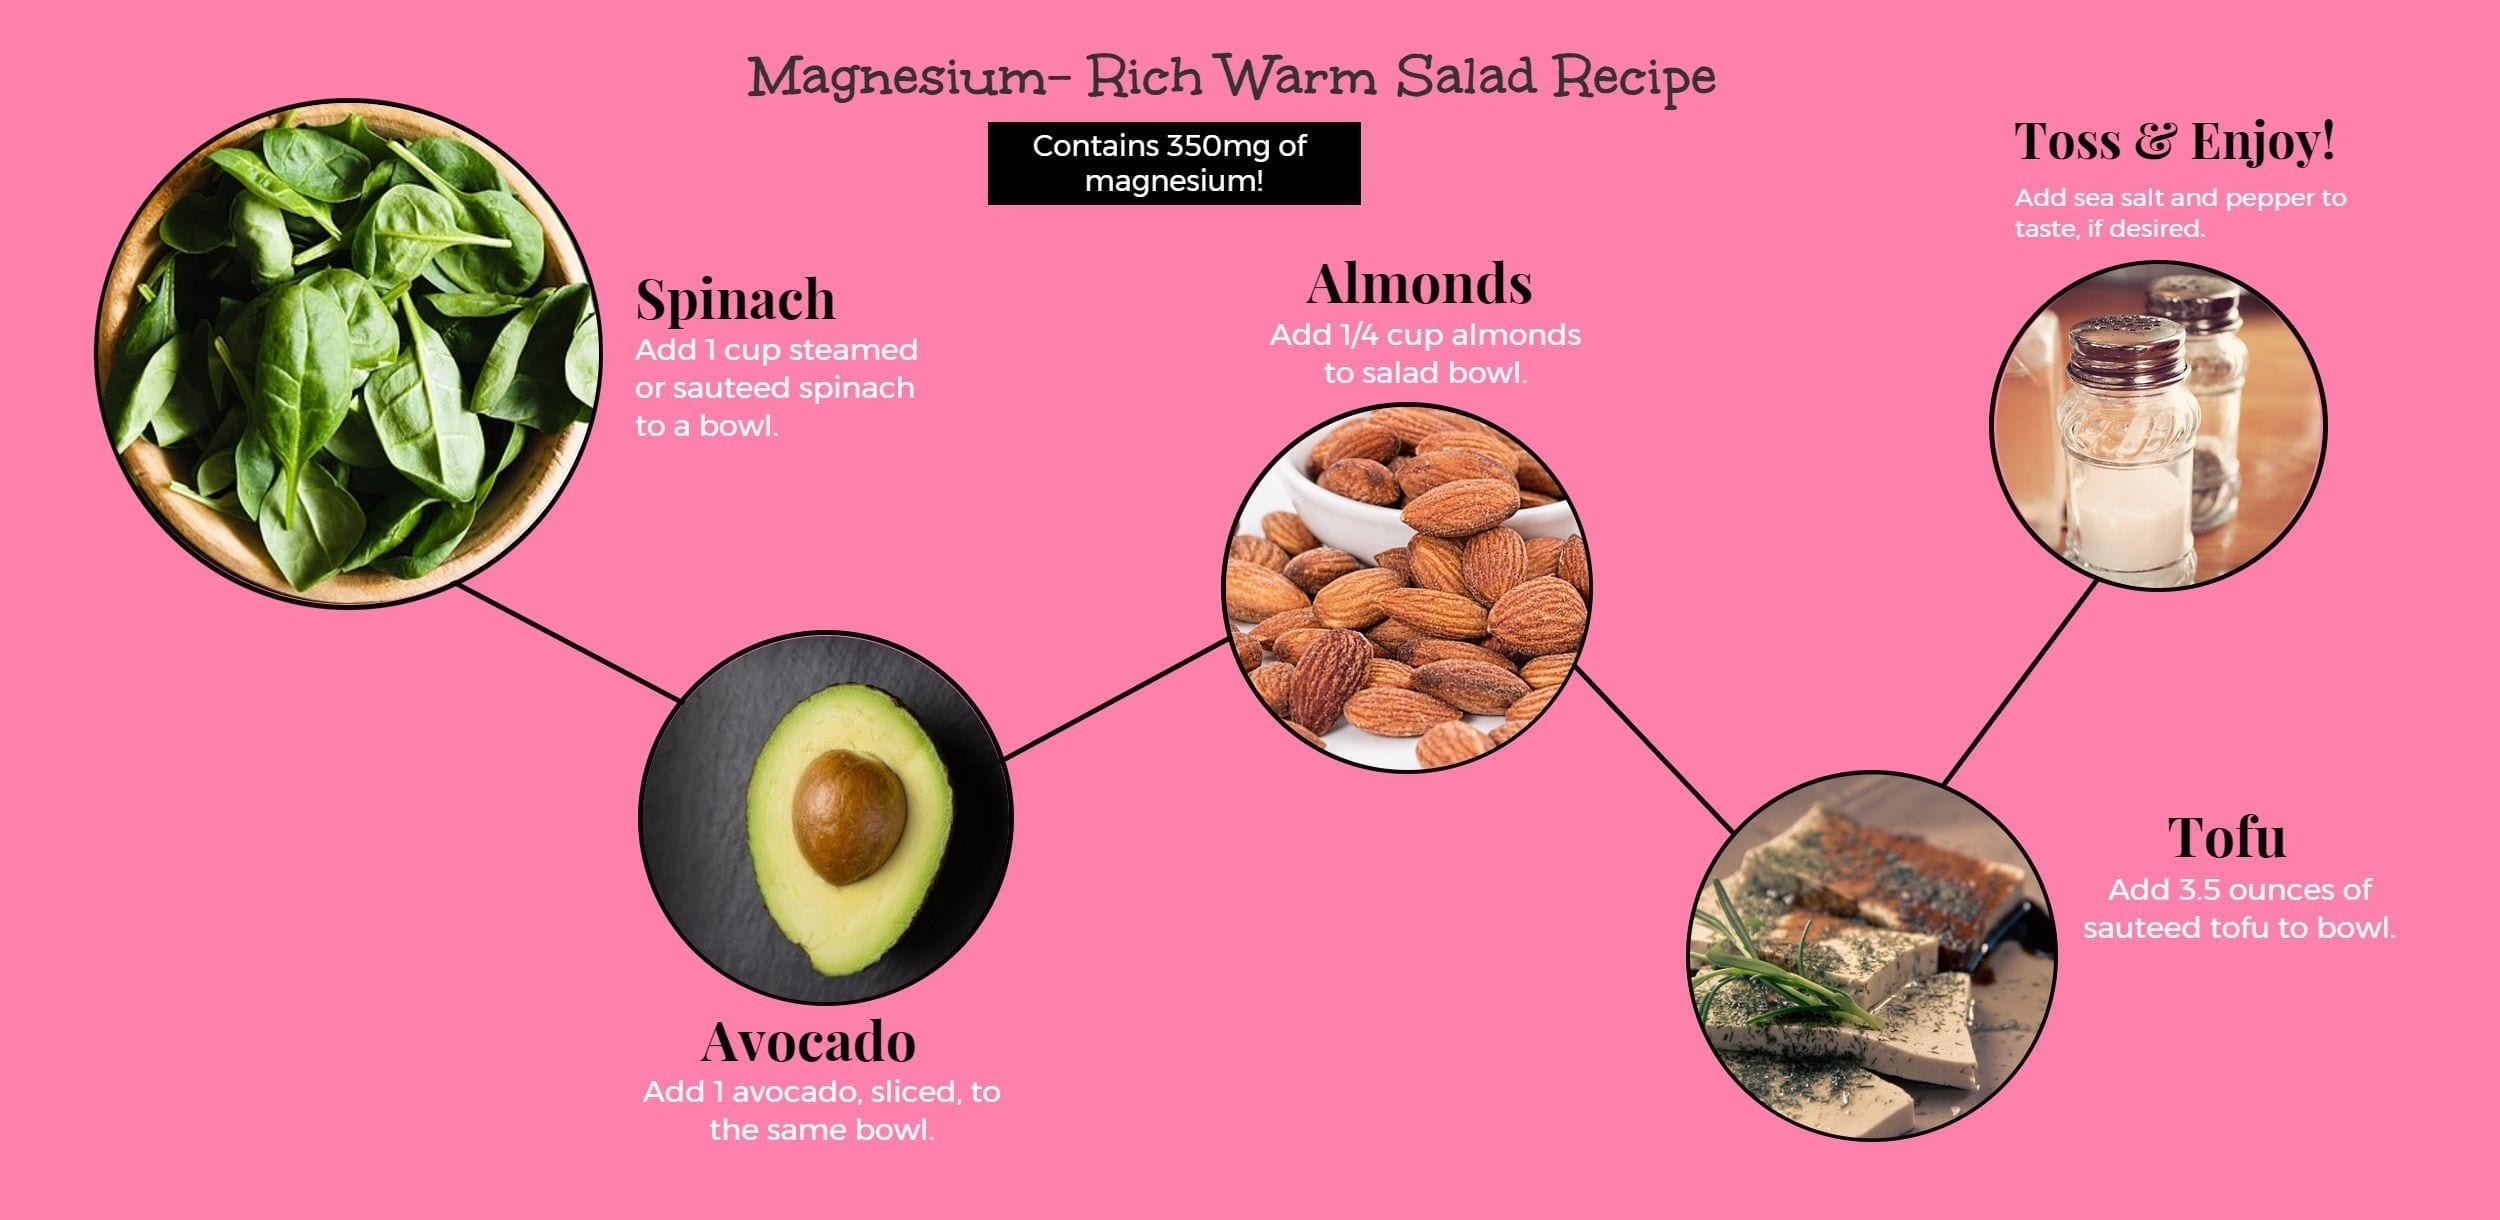 Magnesium rich salad recipe